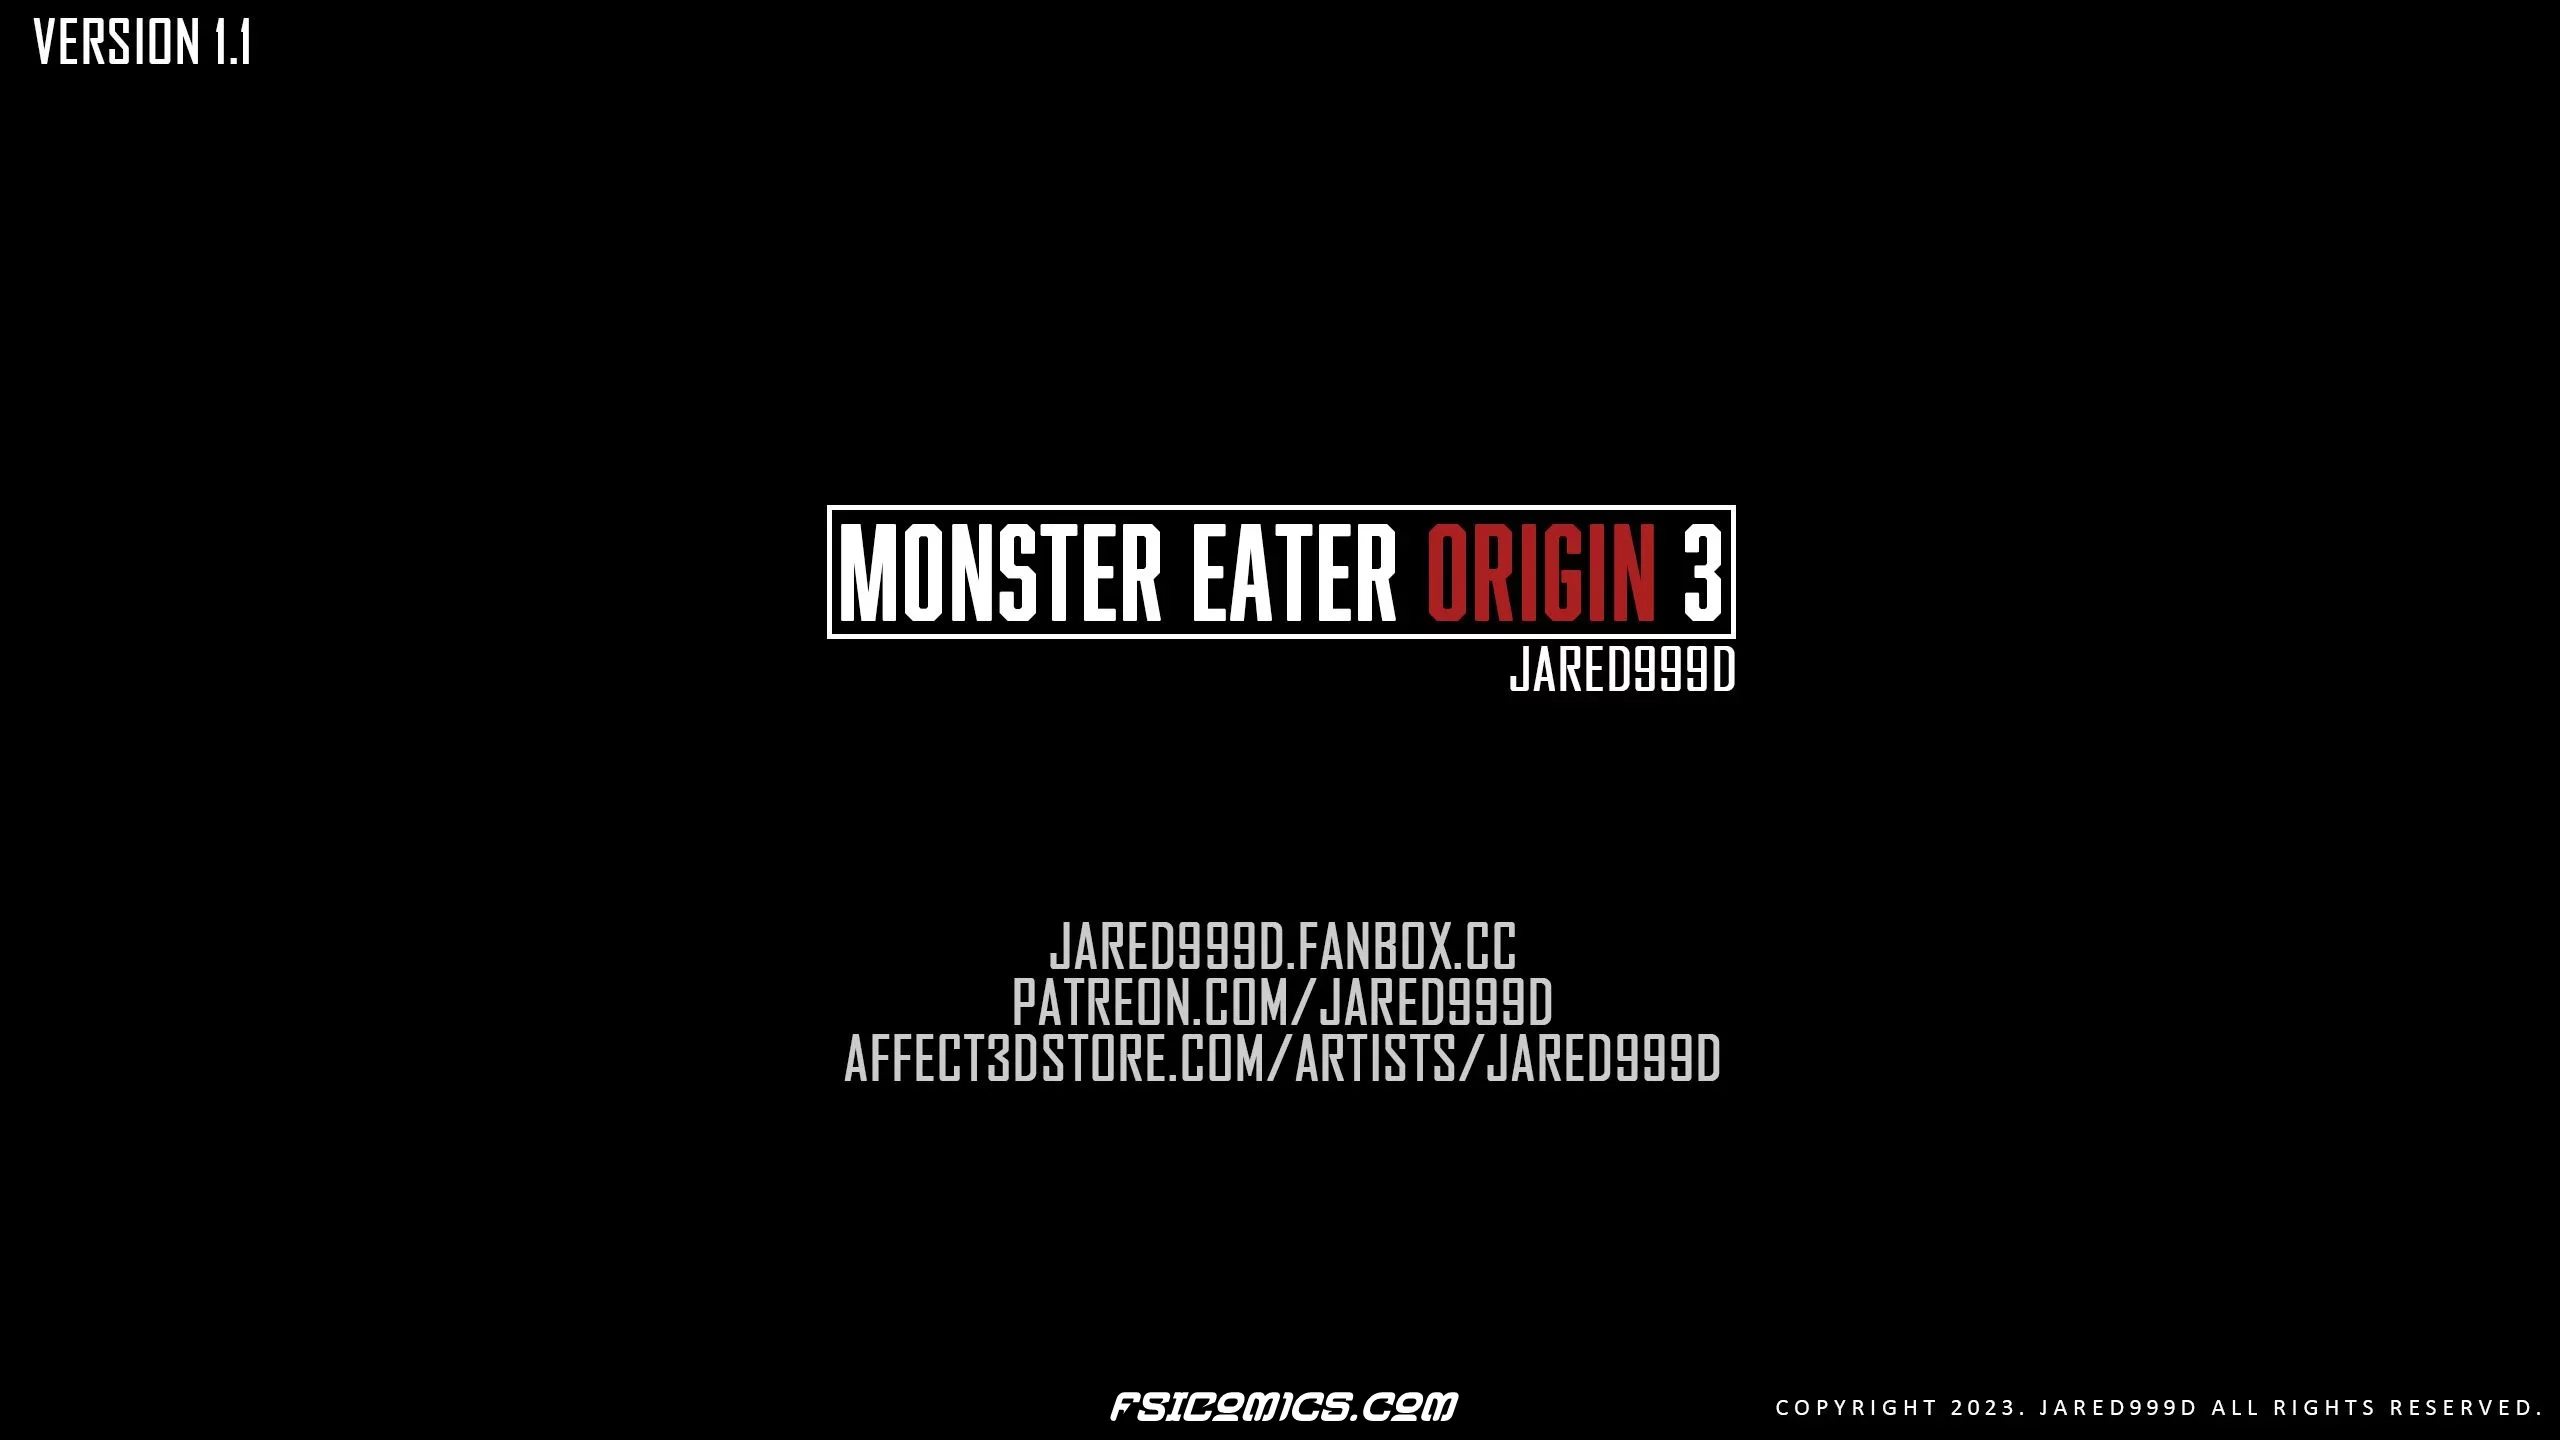 Monster Eater Origins Chapter 3 - Jared999D - 3 - FSIComics